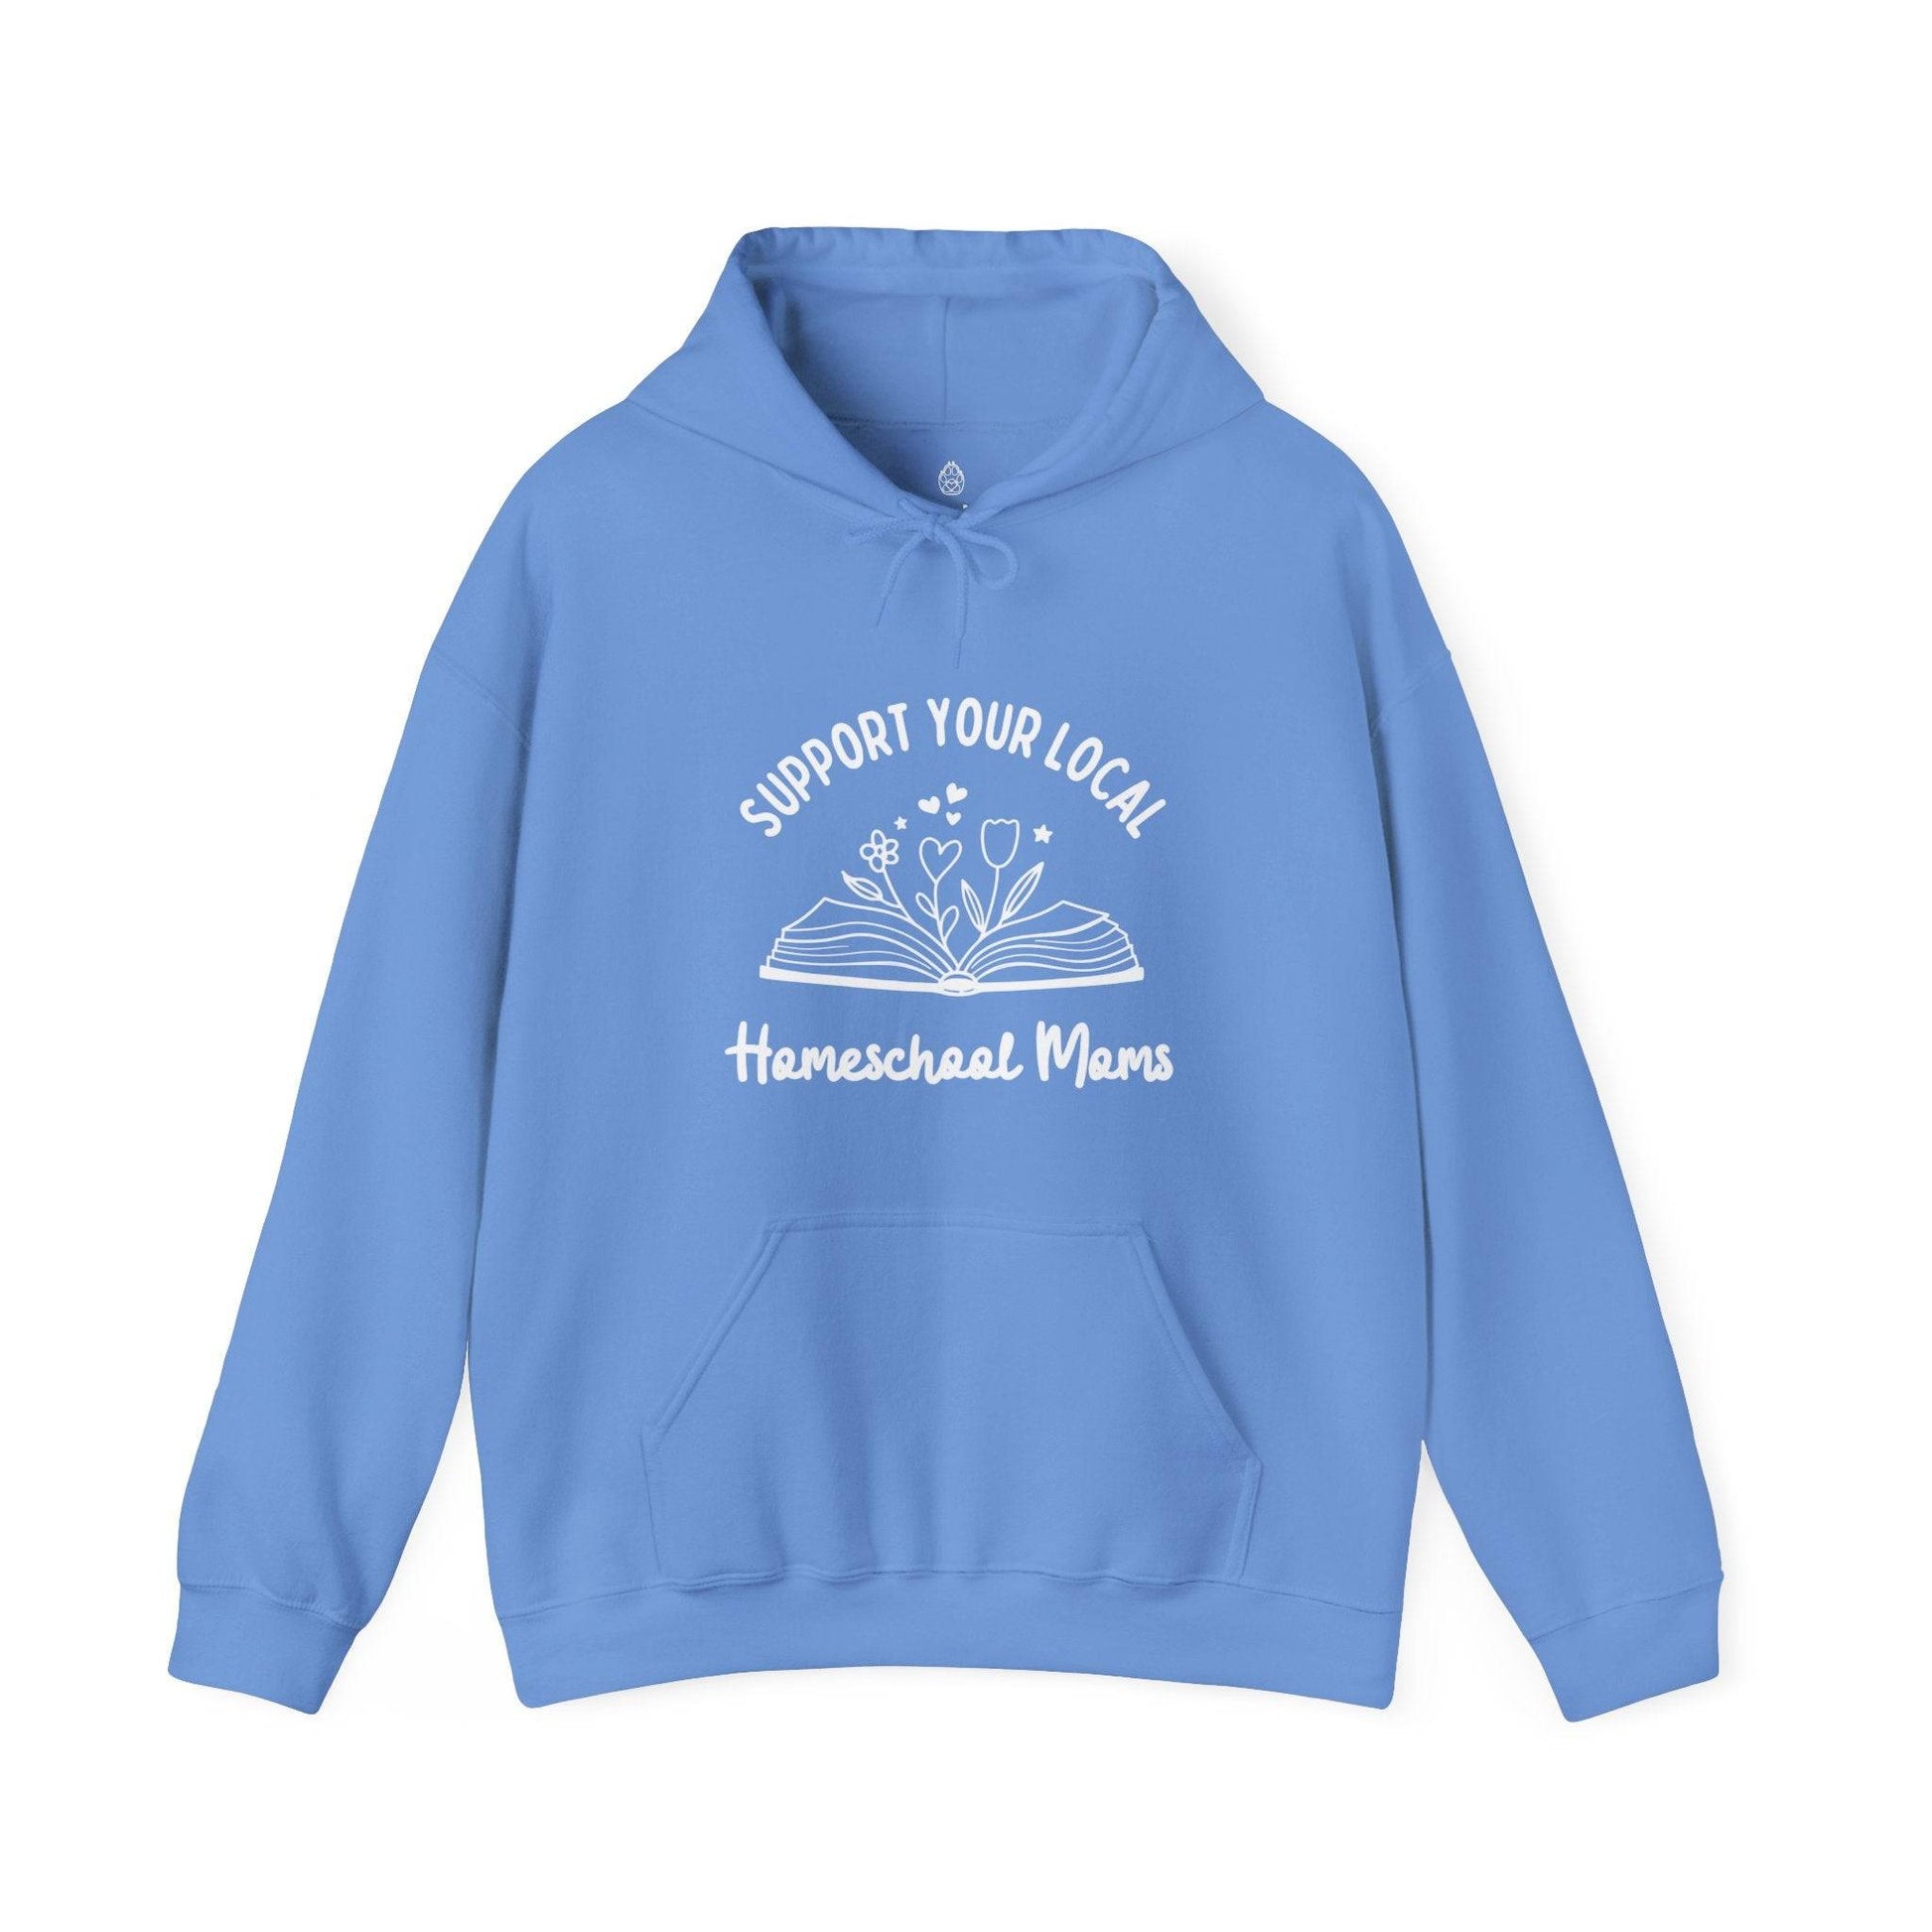 Support Your Local Homeschool Moms Hooded Sweatshirt